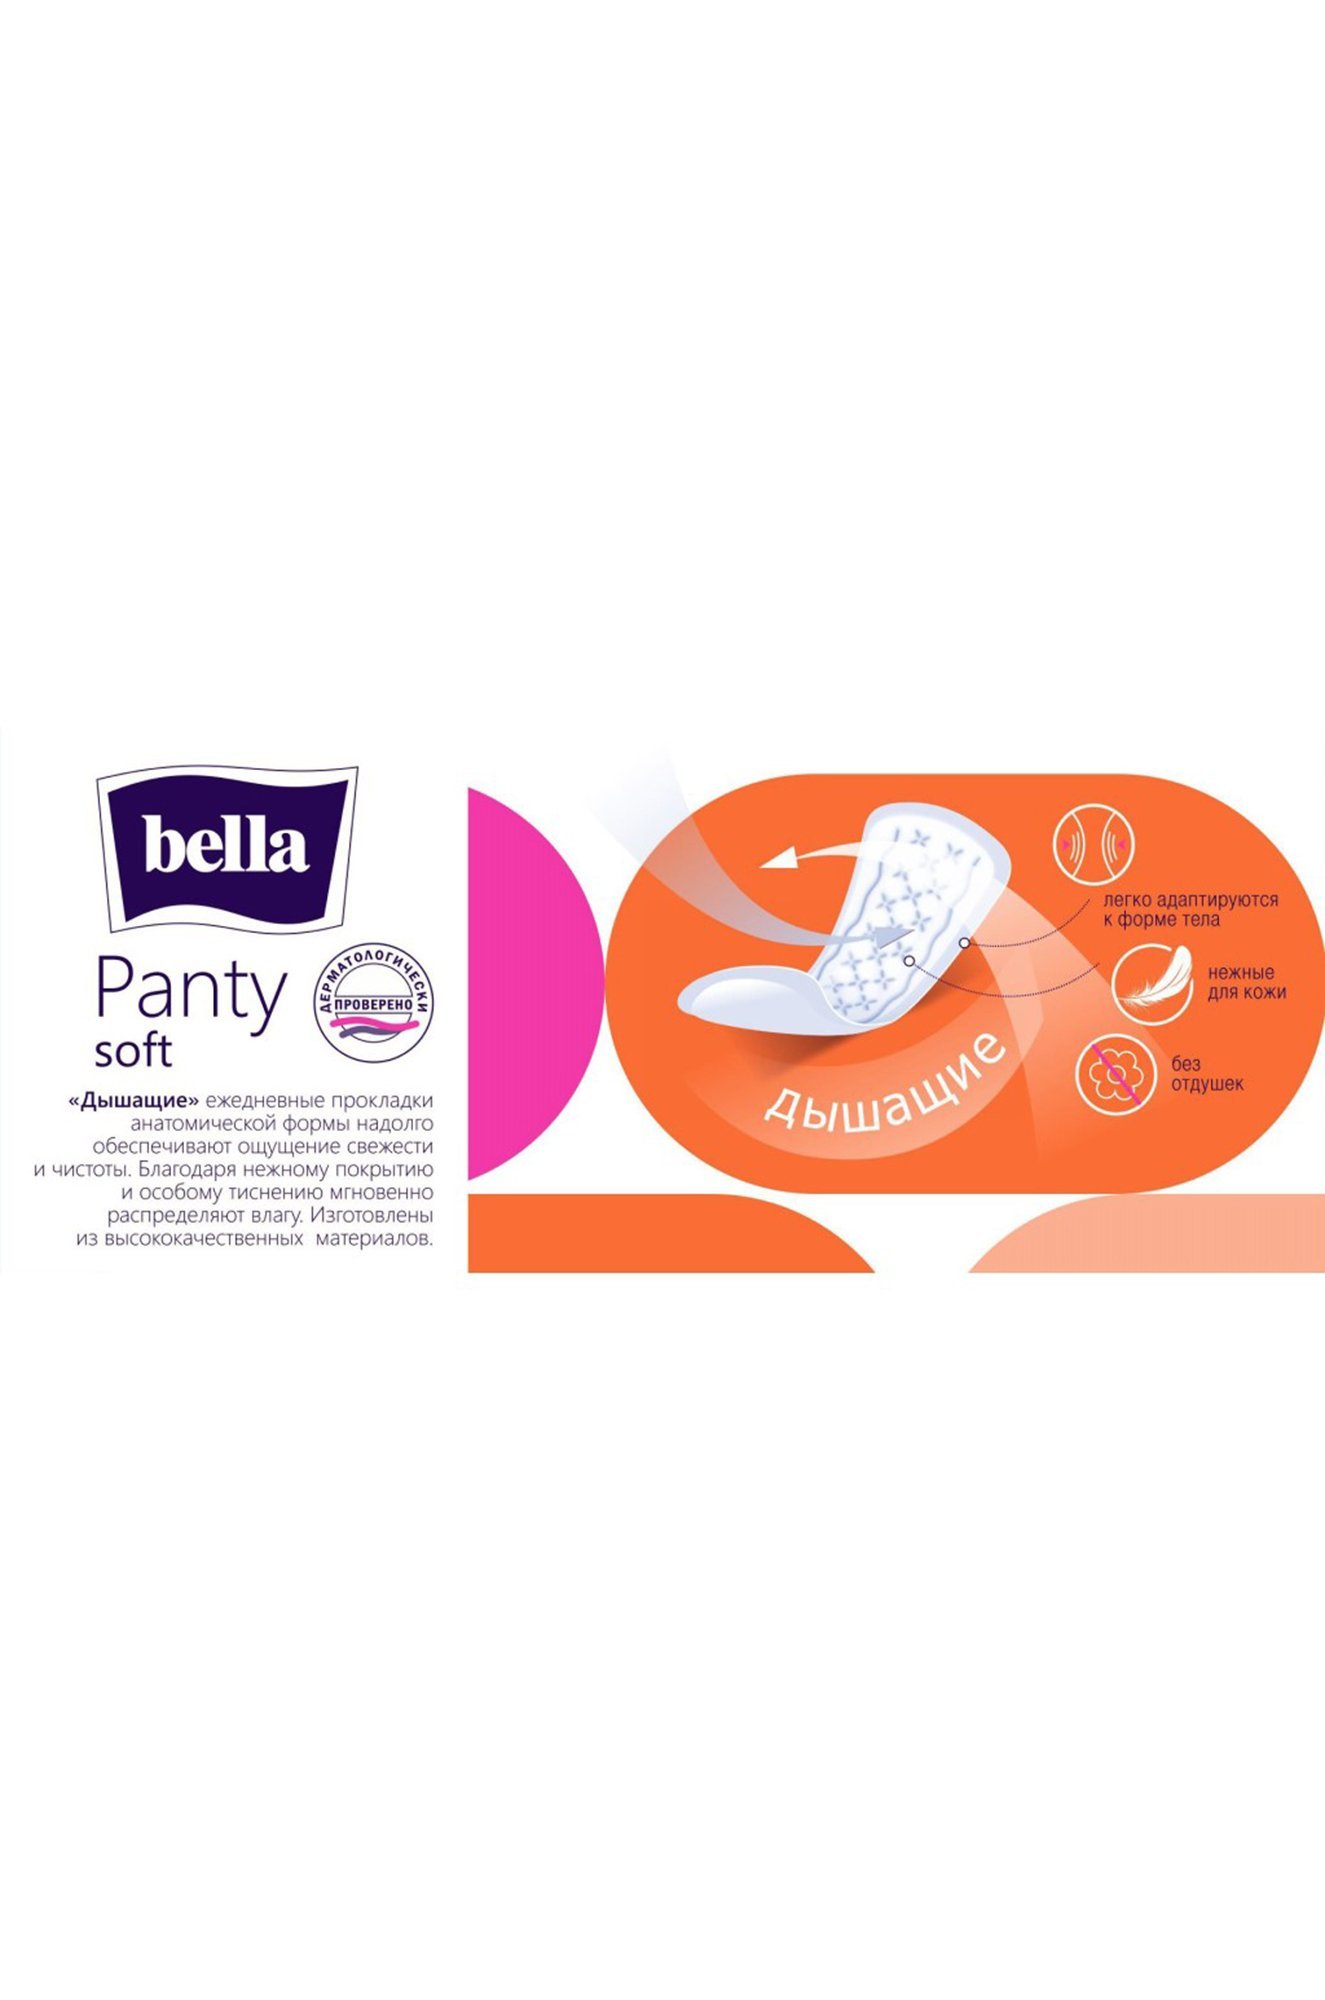 Женские ежедневные прокладки bella panty soft 50+10 шт. Bella